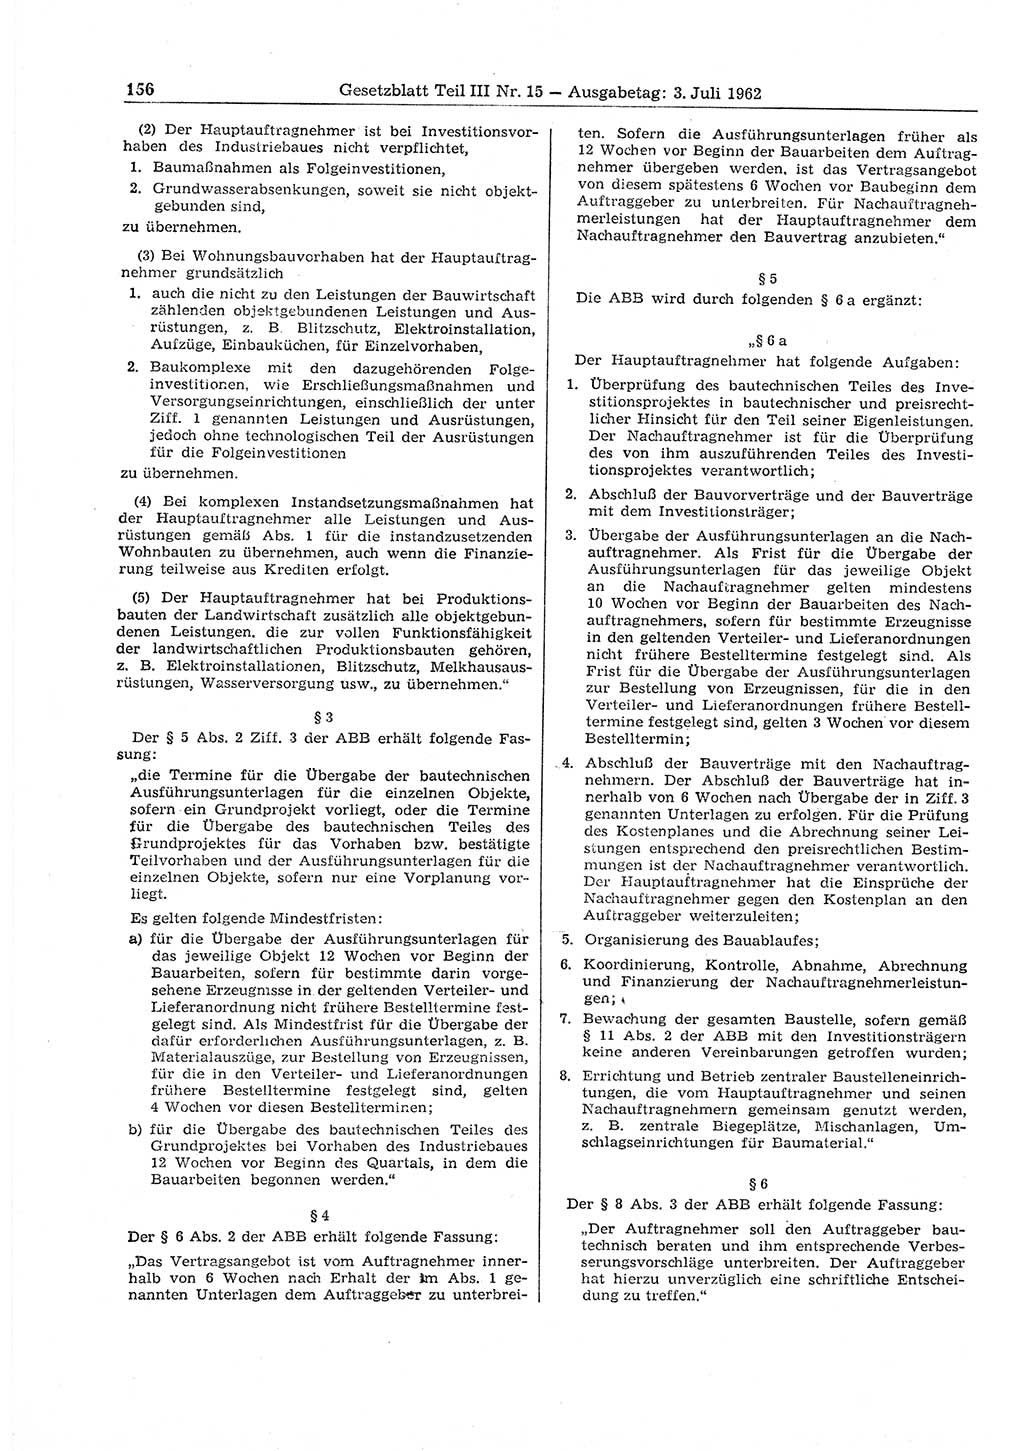 Gesetzblatt (GBl.) der Deutschen Demokratischen Republik (DDR) Teil ⅠⅠⅠ 1962, Seite 156 (GBl. DDR ⅠⅠⅠ 1962, S. 156)